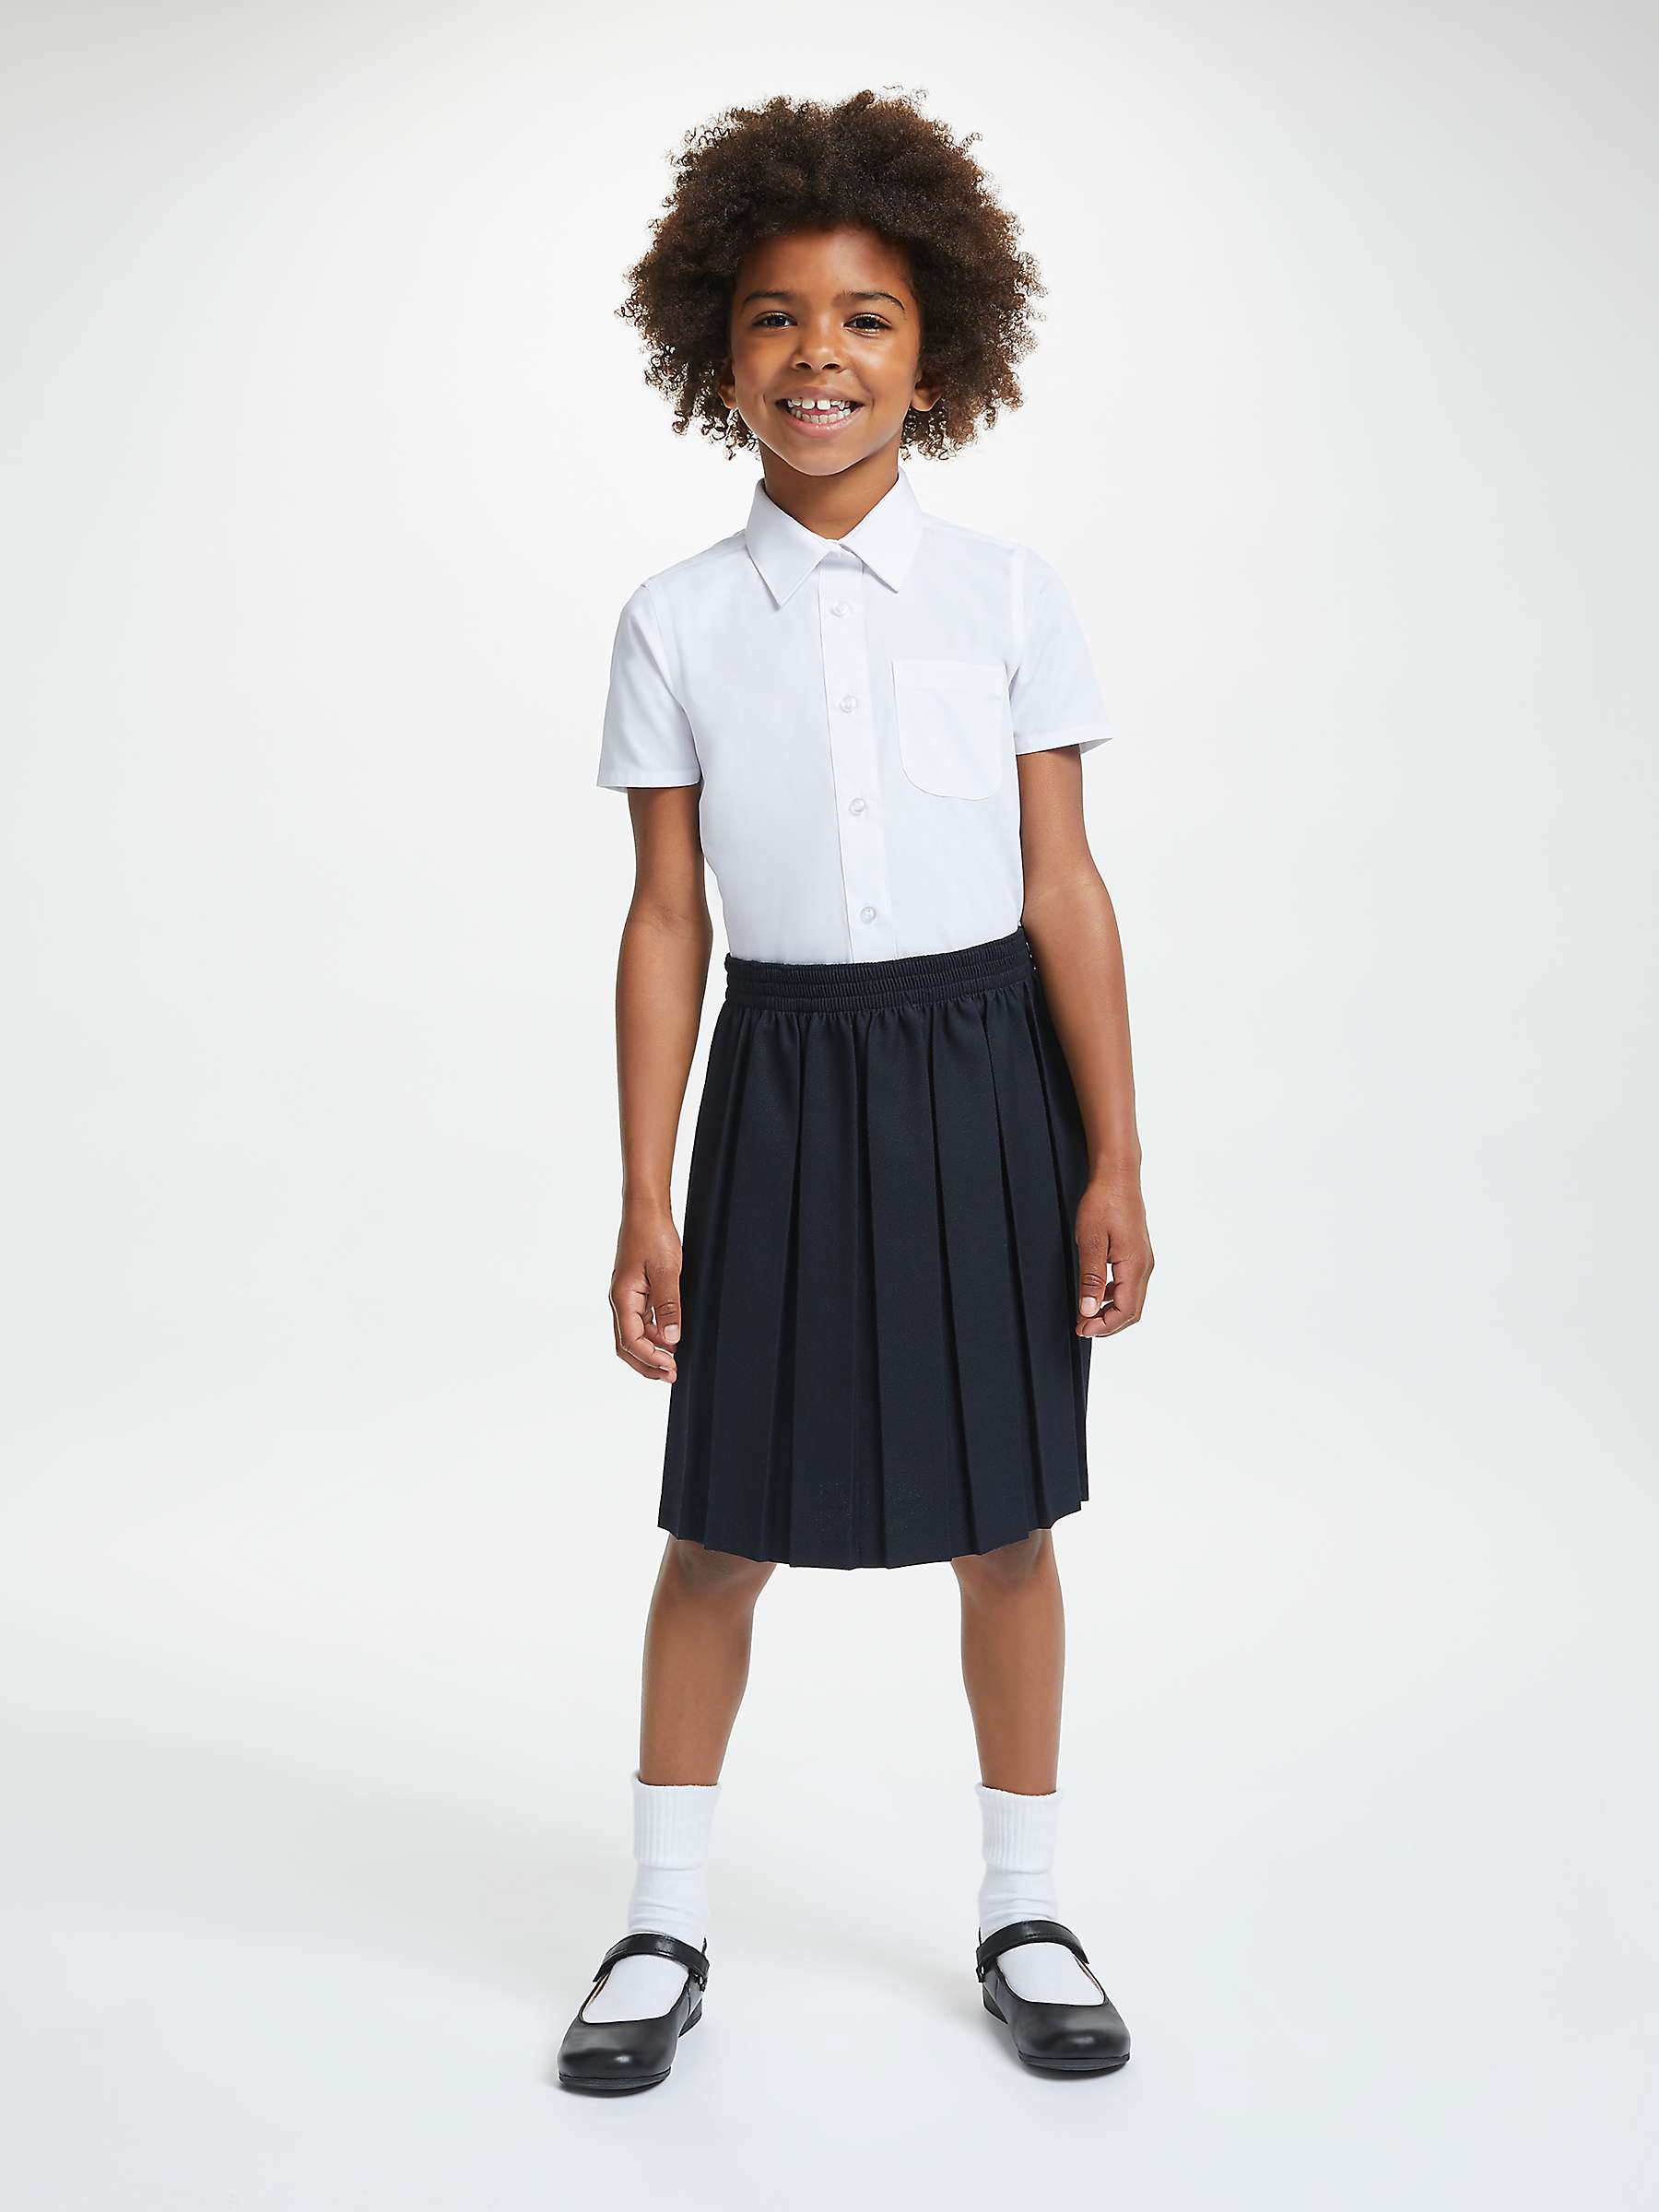 2 x John Lewis short sleeve school blouses age 3 girls white 